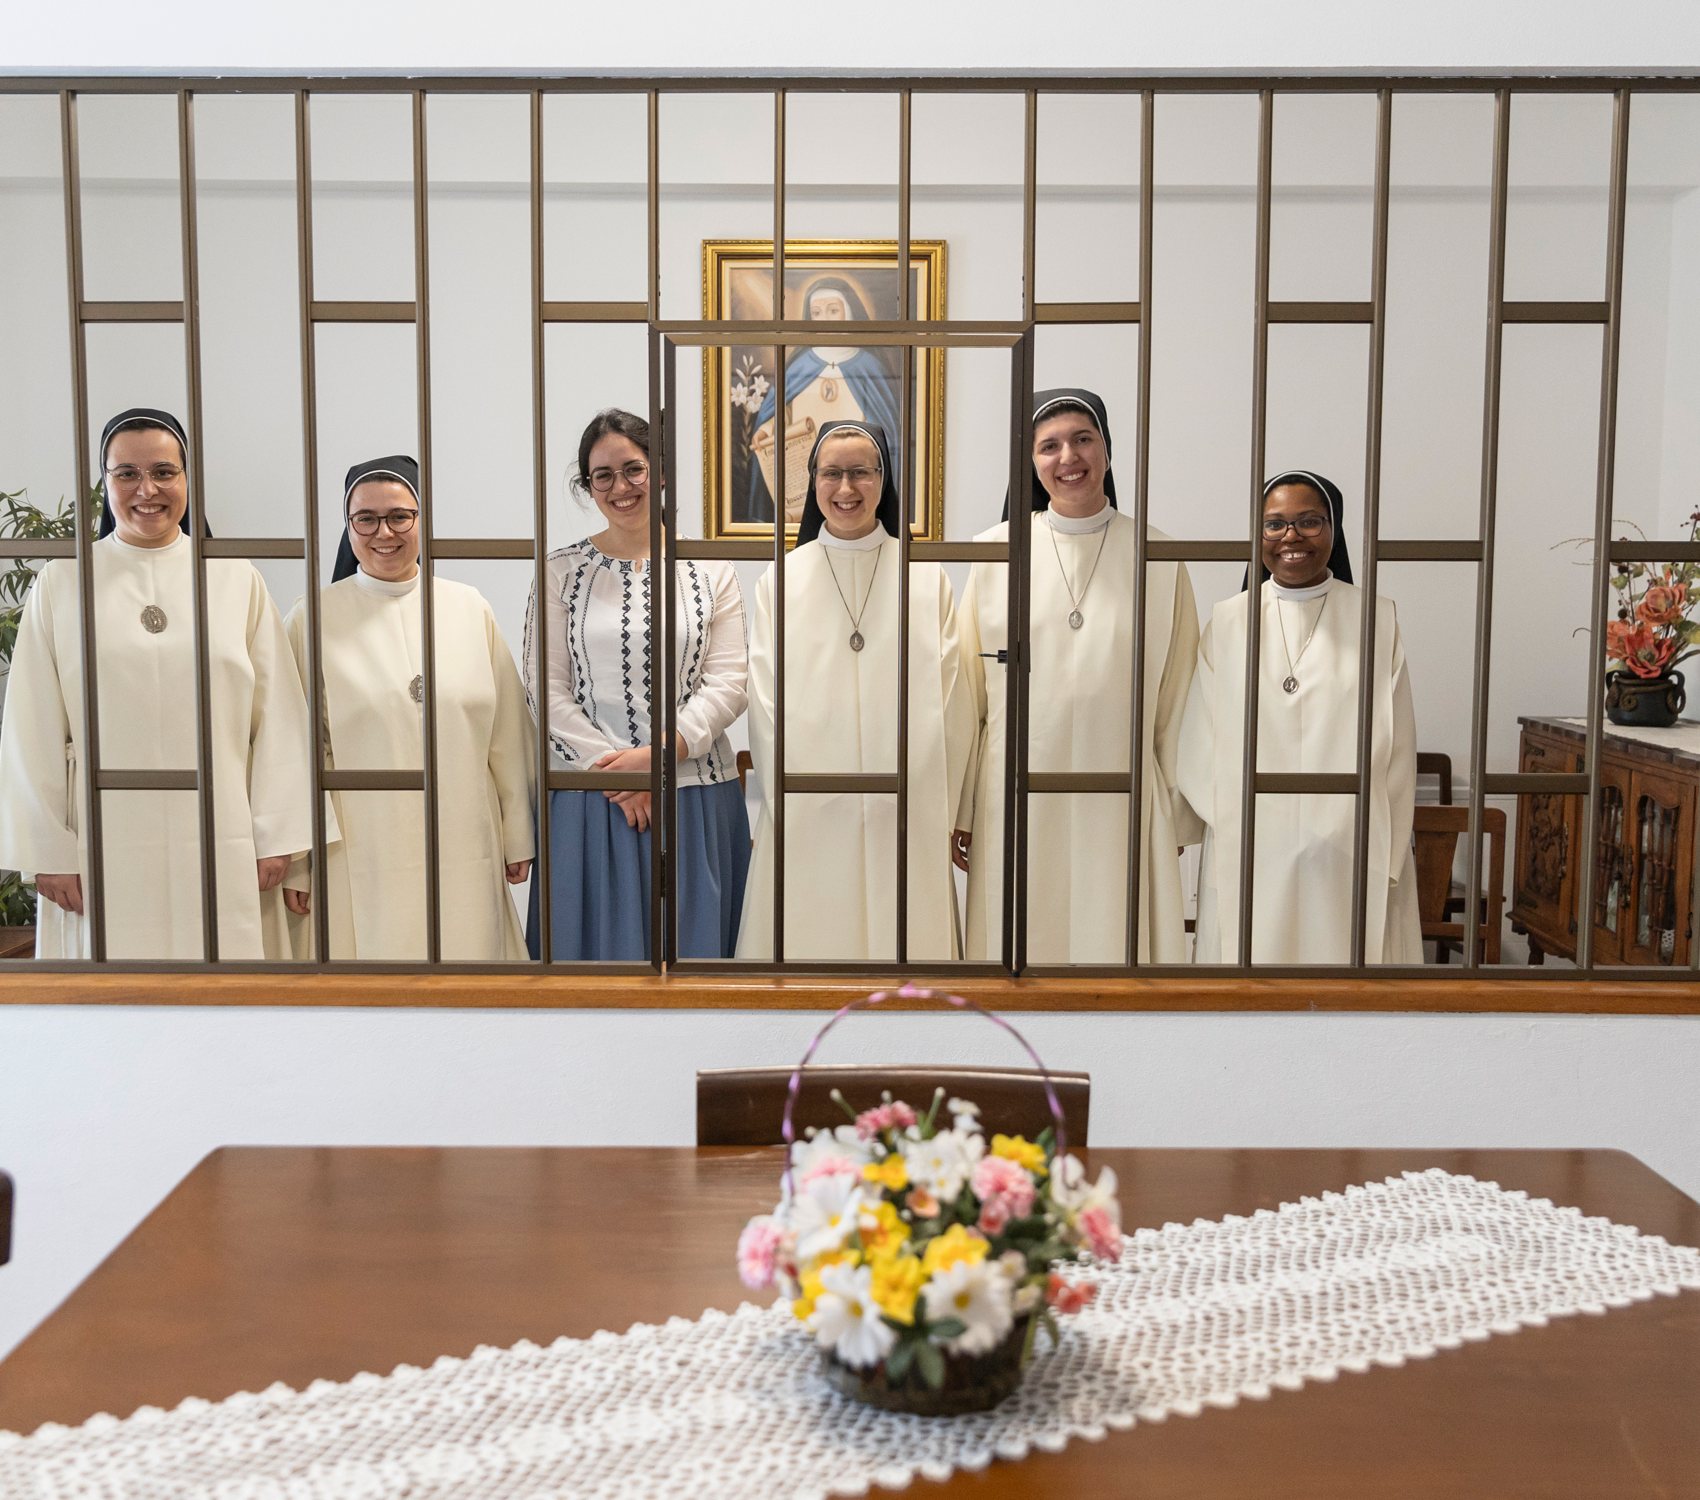 As seis jovens freiras que o Observador entrevistou no locutório do Mosteiro de Santa Beatriz, em Viseu